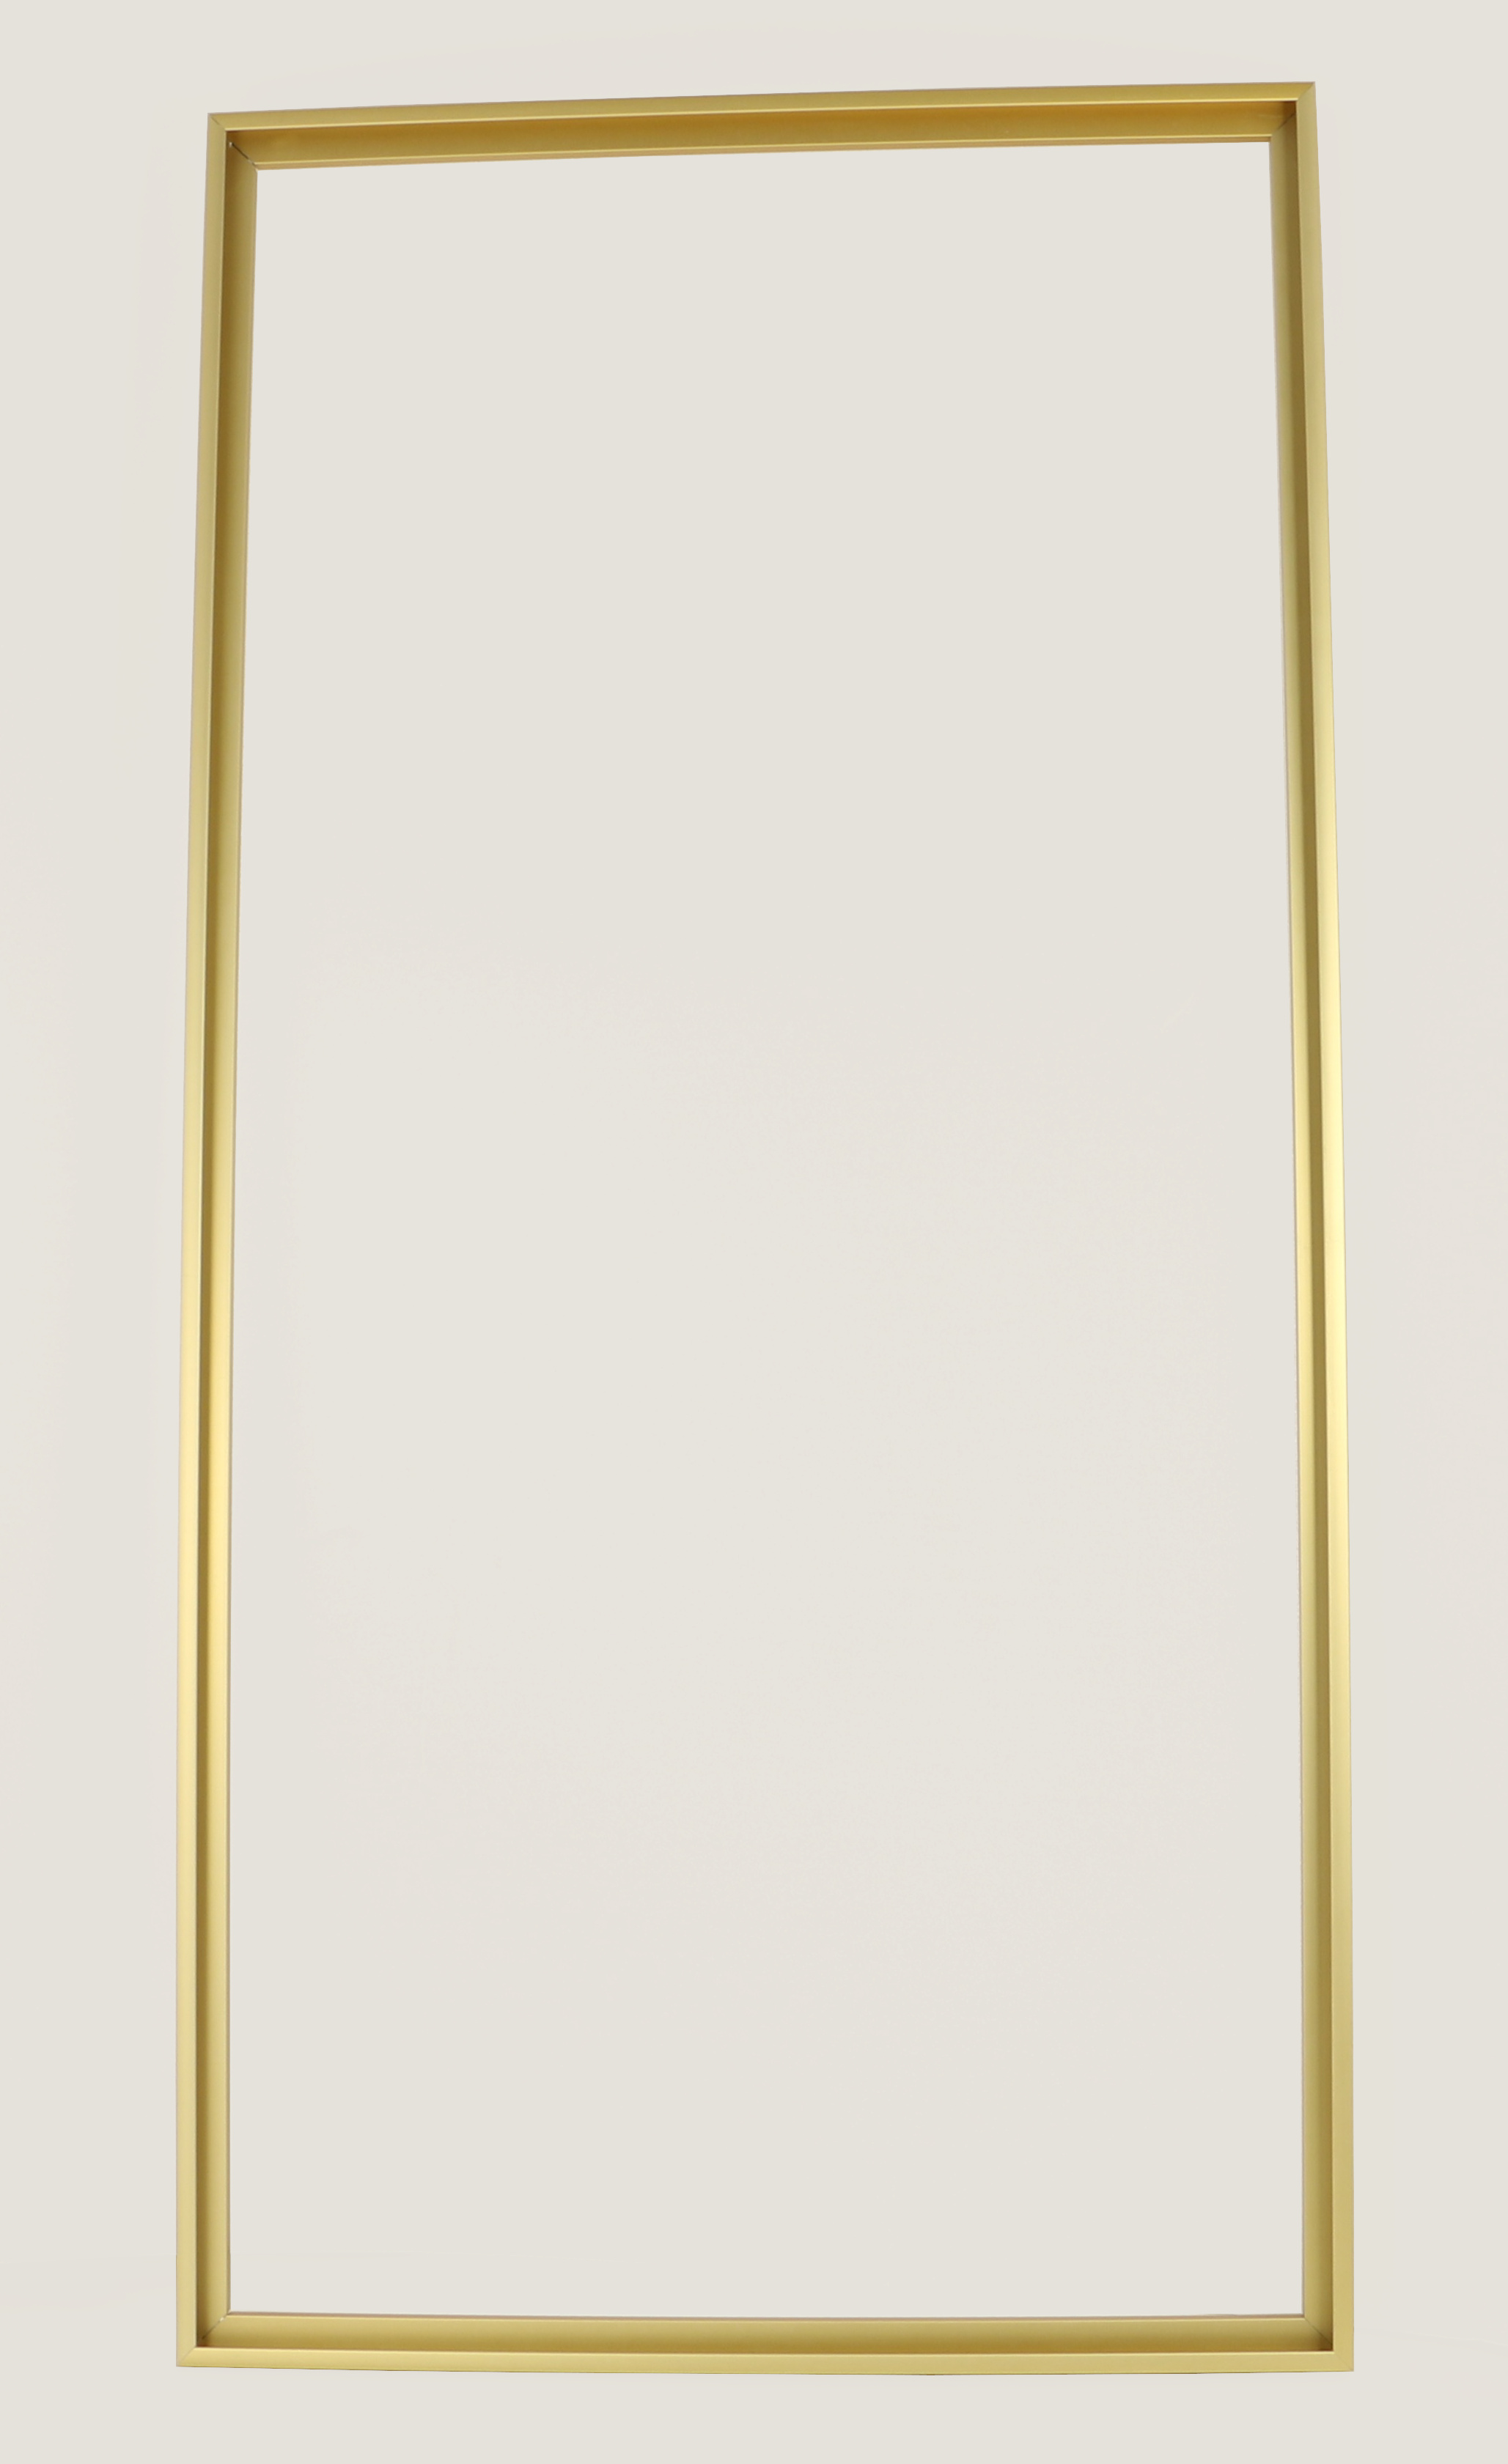 Alurahmen gold-matt für 40x80cm Zahlen z.B. Manhattan Malen Schipper nach